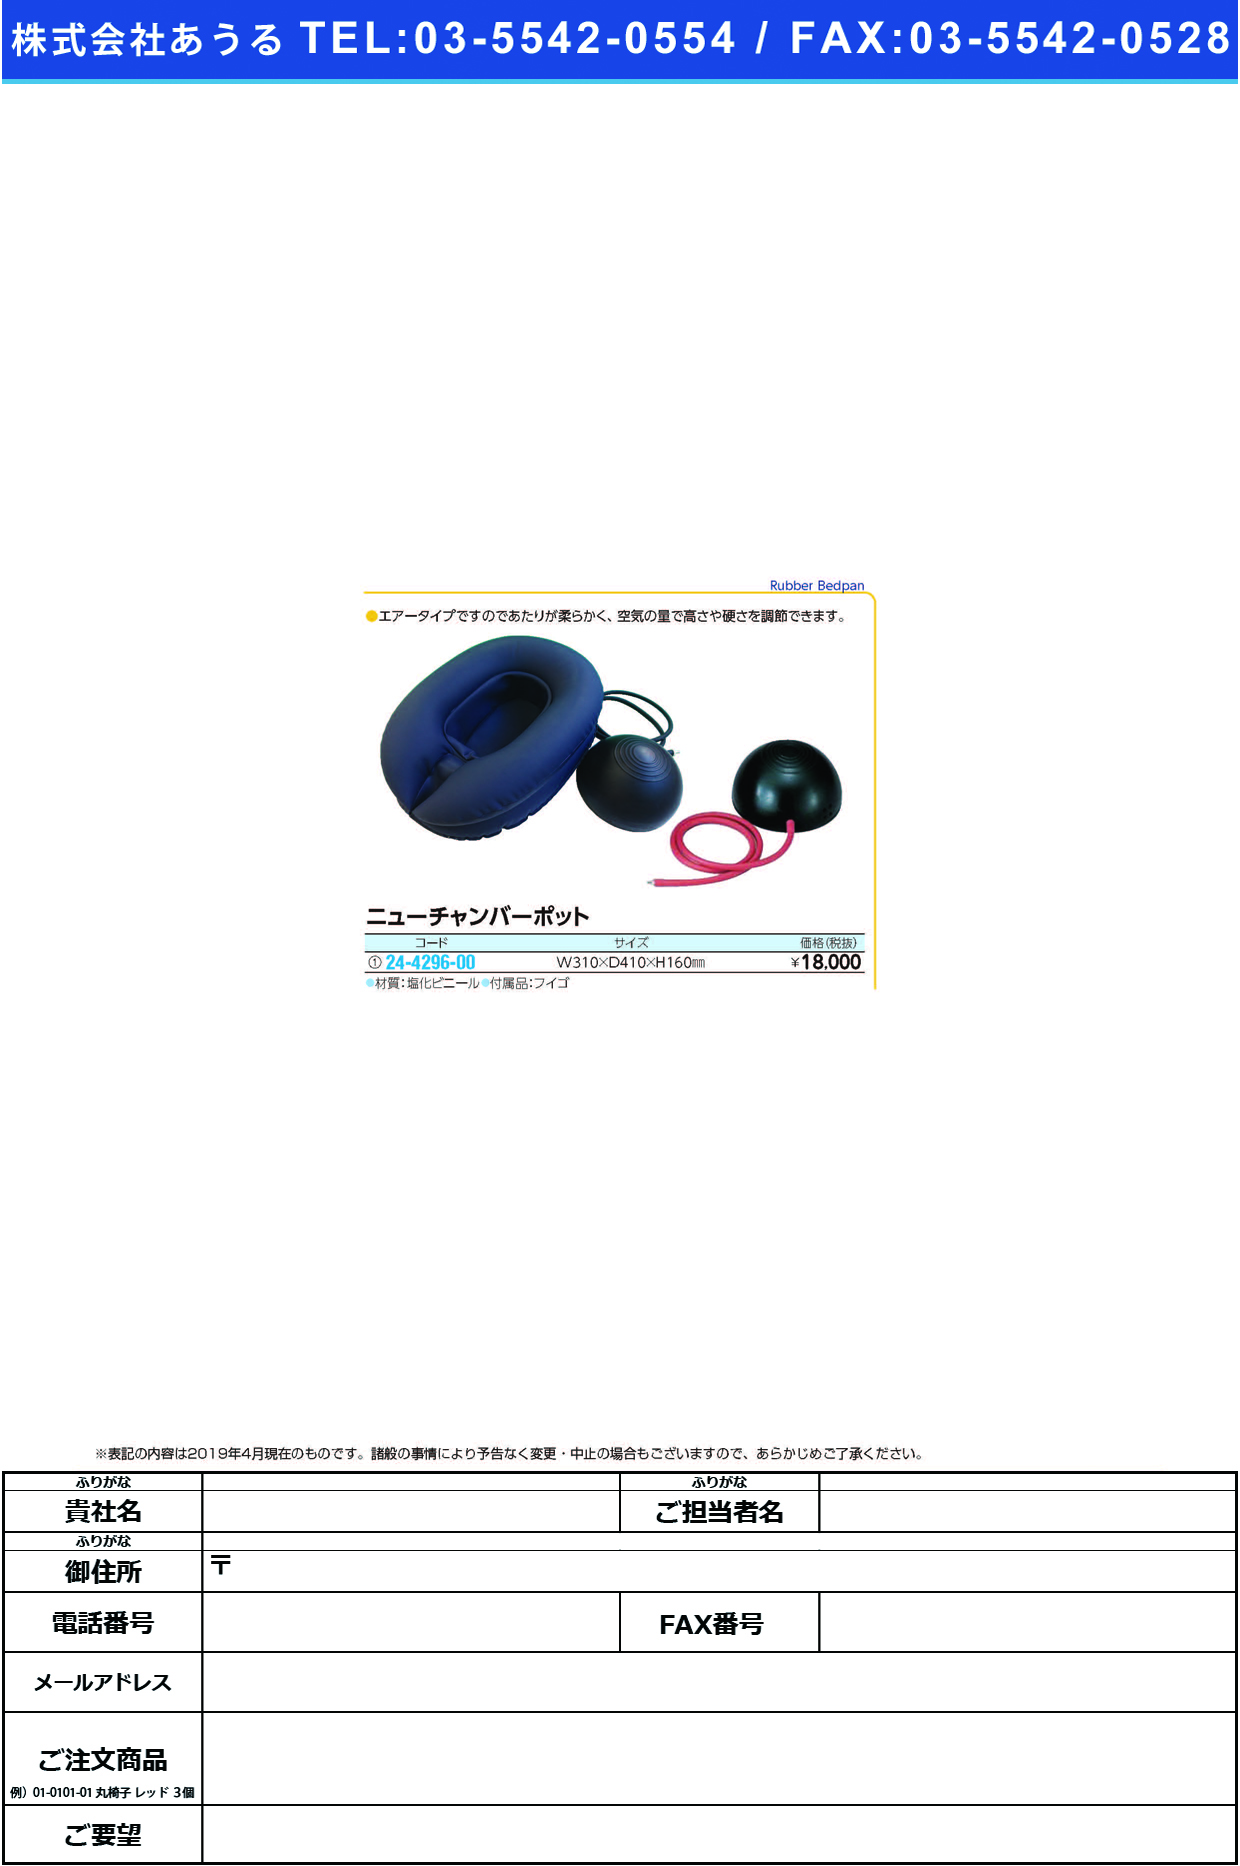 (24-4296-00)ニューチャンバーポット（塩ビ製）  ﾆｭｰﾁｬﾝﾊﾞｰﾎﾟｯﾄ(ｴﾝﾋﾞ)【1組単位】【2019年カタログ商品】